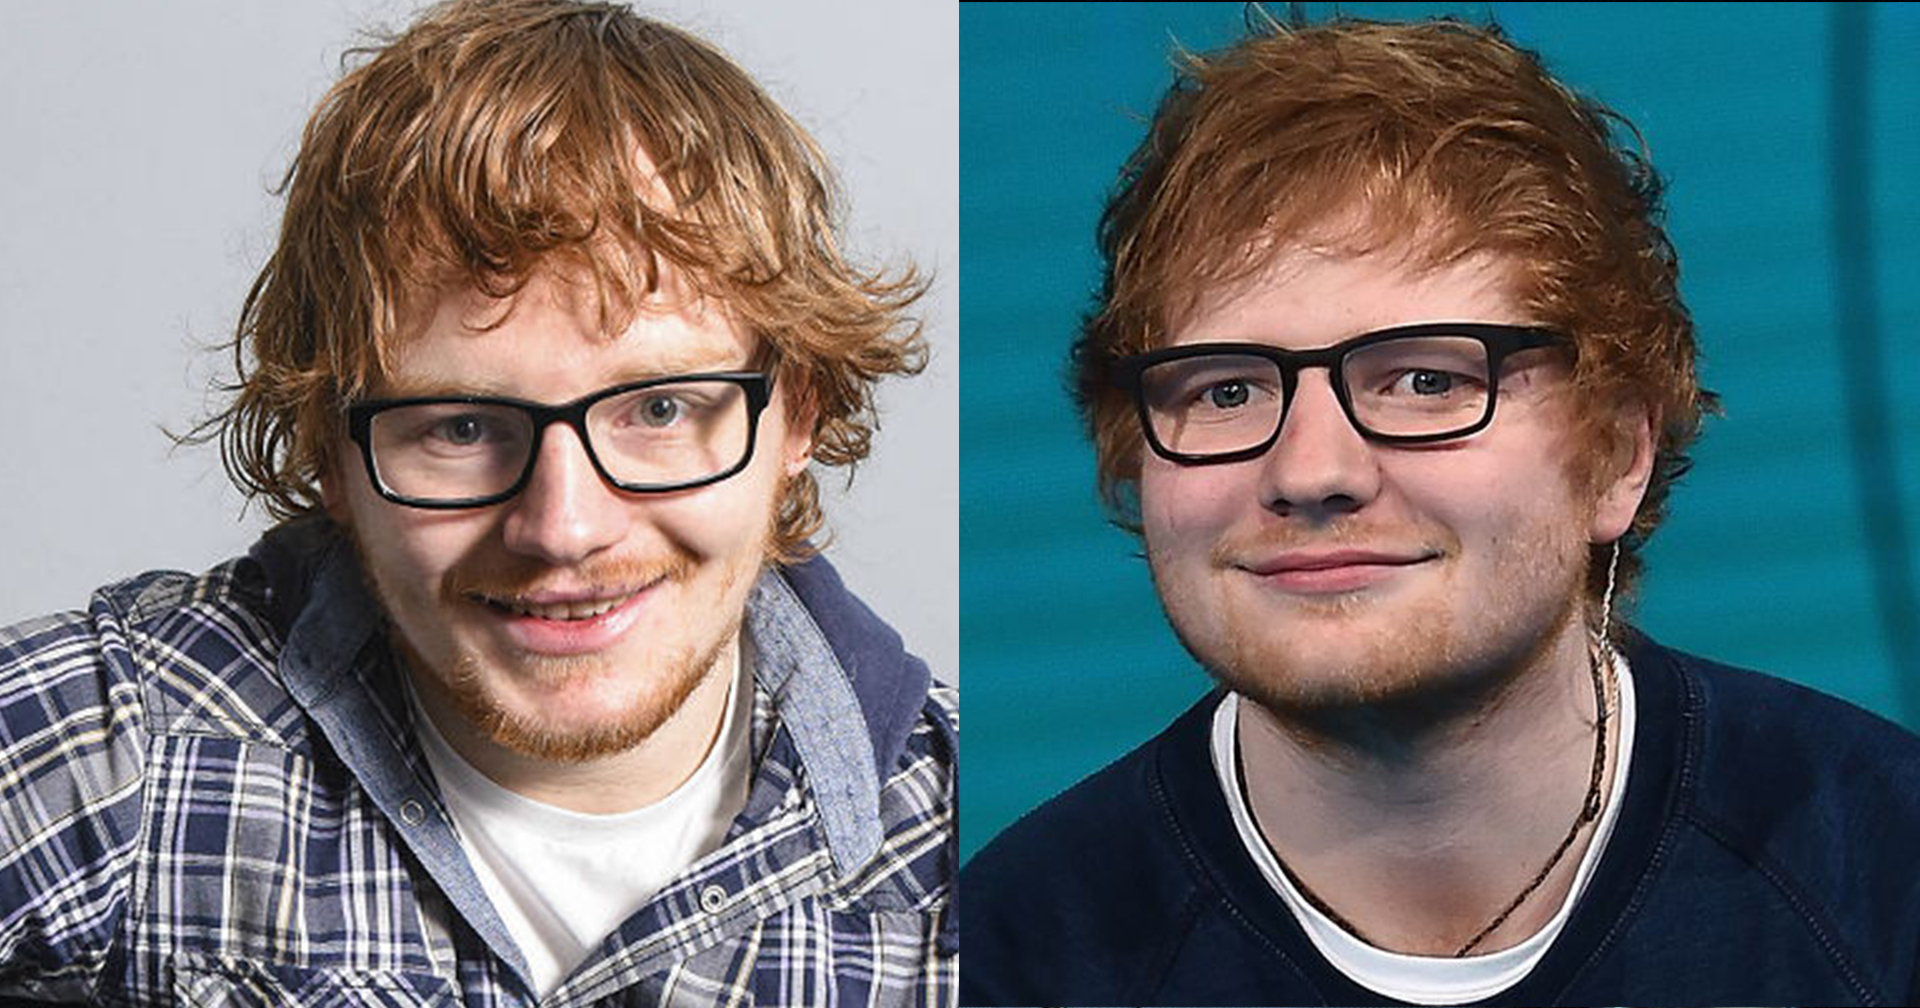 ไม่เหมือนตรงไหนเอาปากกามาวง! พนักงานซูเปอร์ฯ หน้าเหมือน Ed Sheeran ขนาดแฟนตัวเองยังช็อก